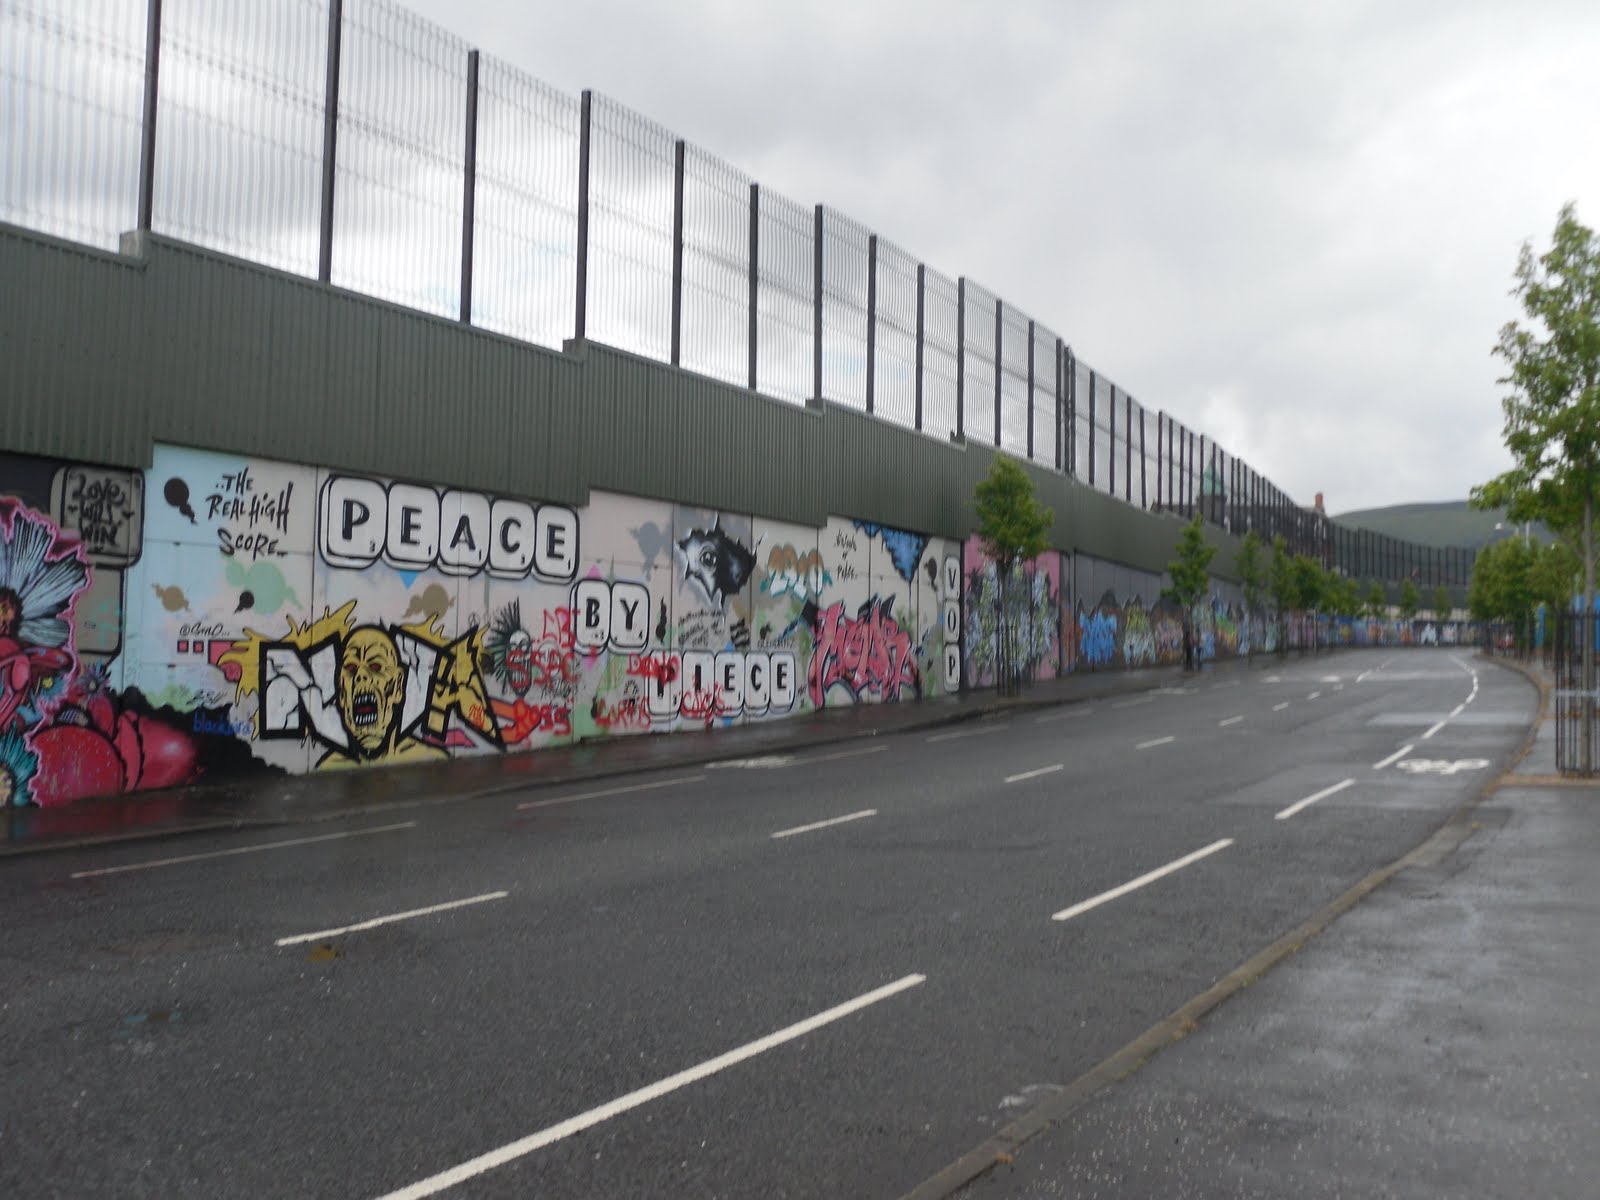 Peace Wall Ireland